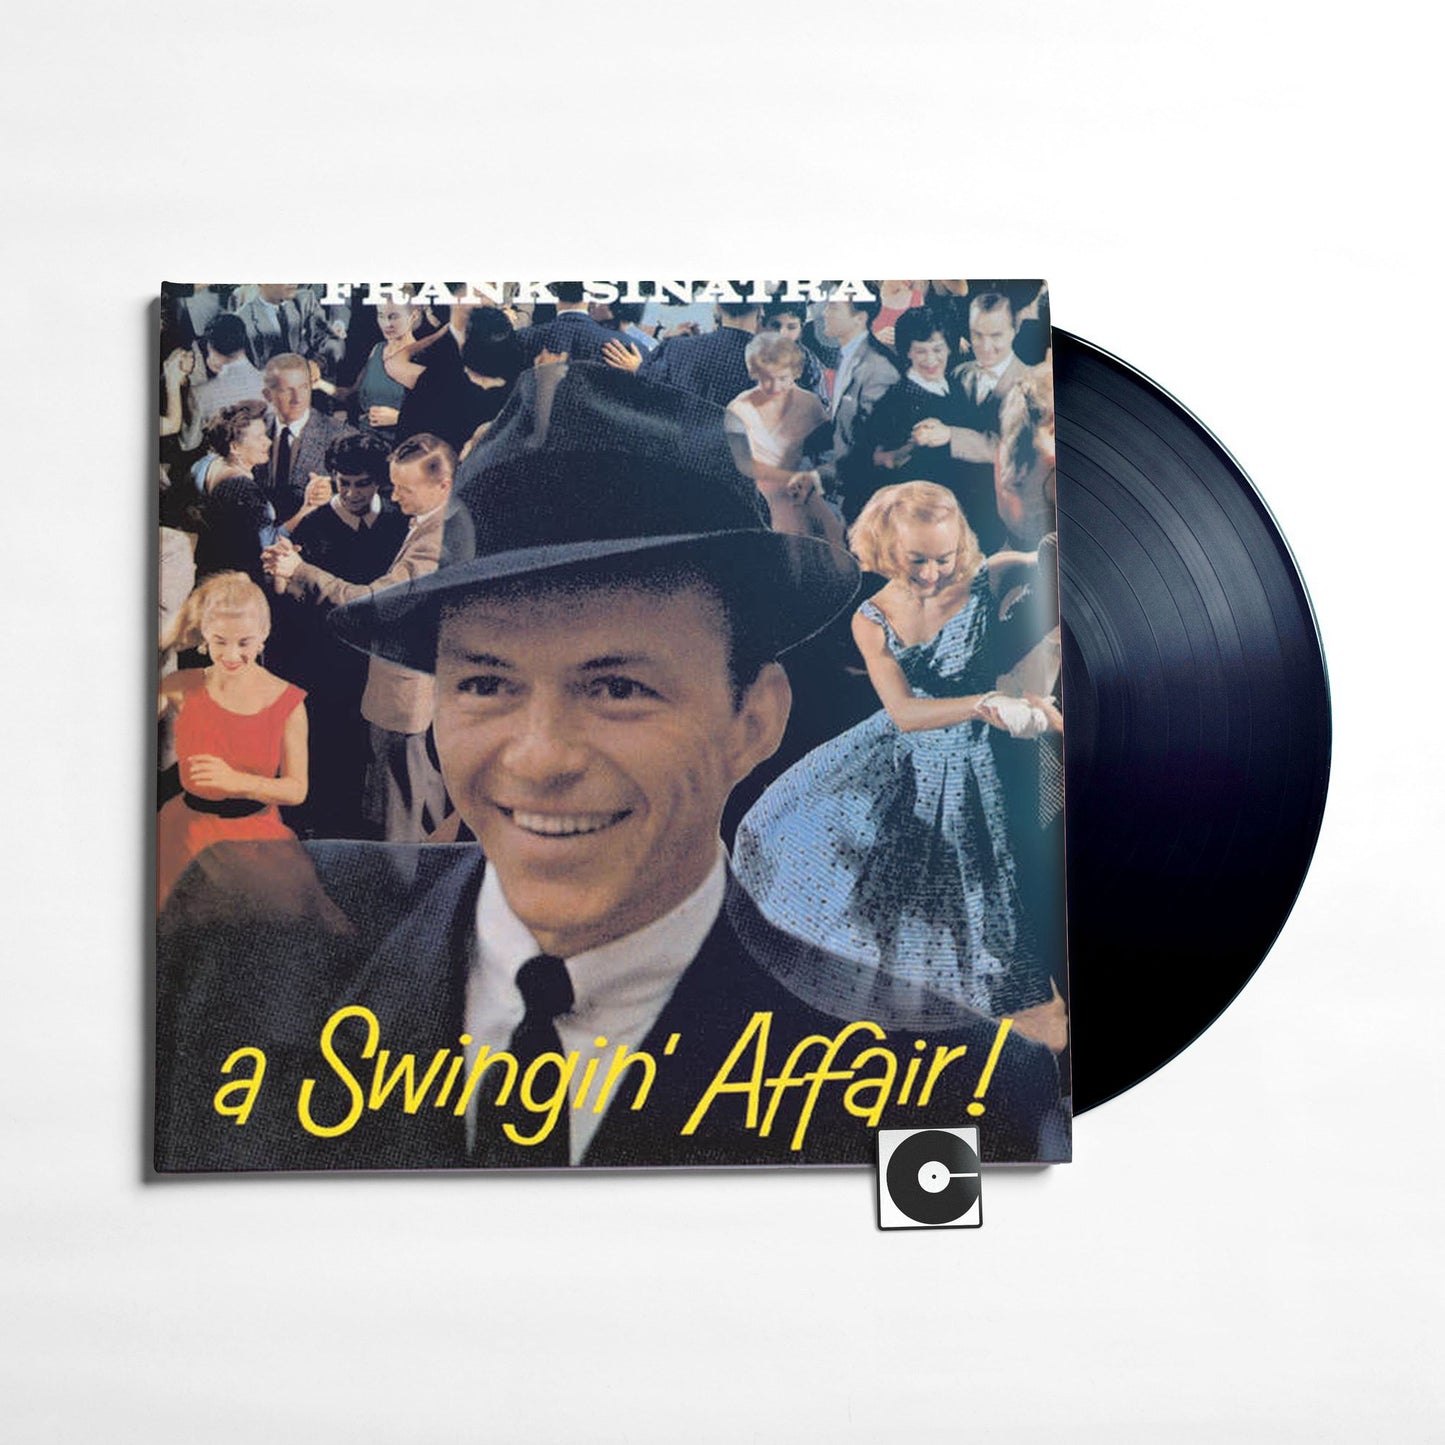 Frank Sinatra - "A Swingin' Affair"